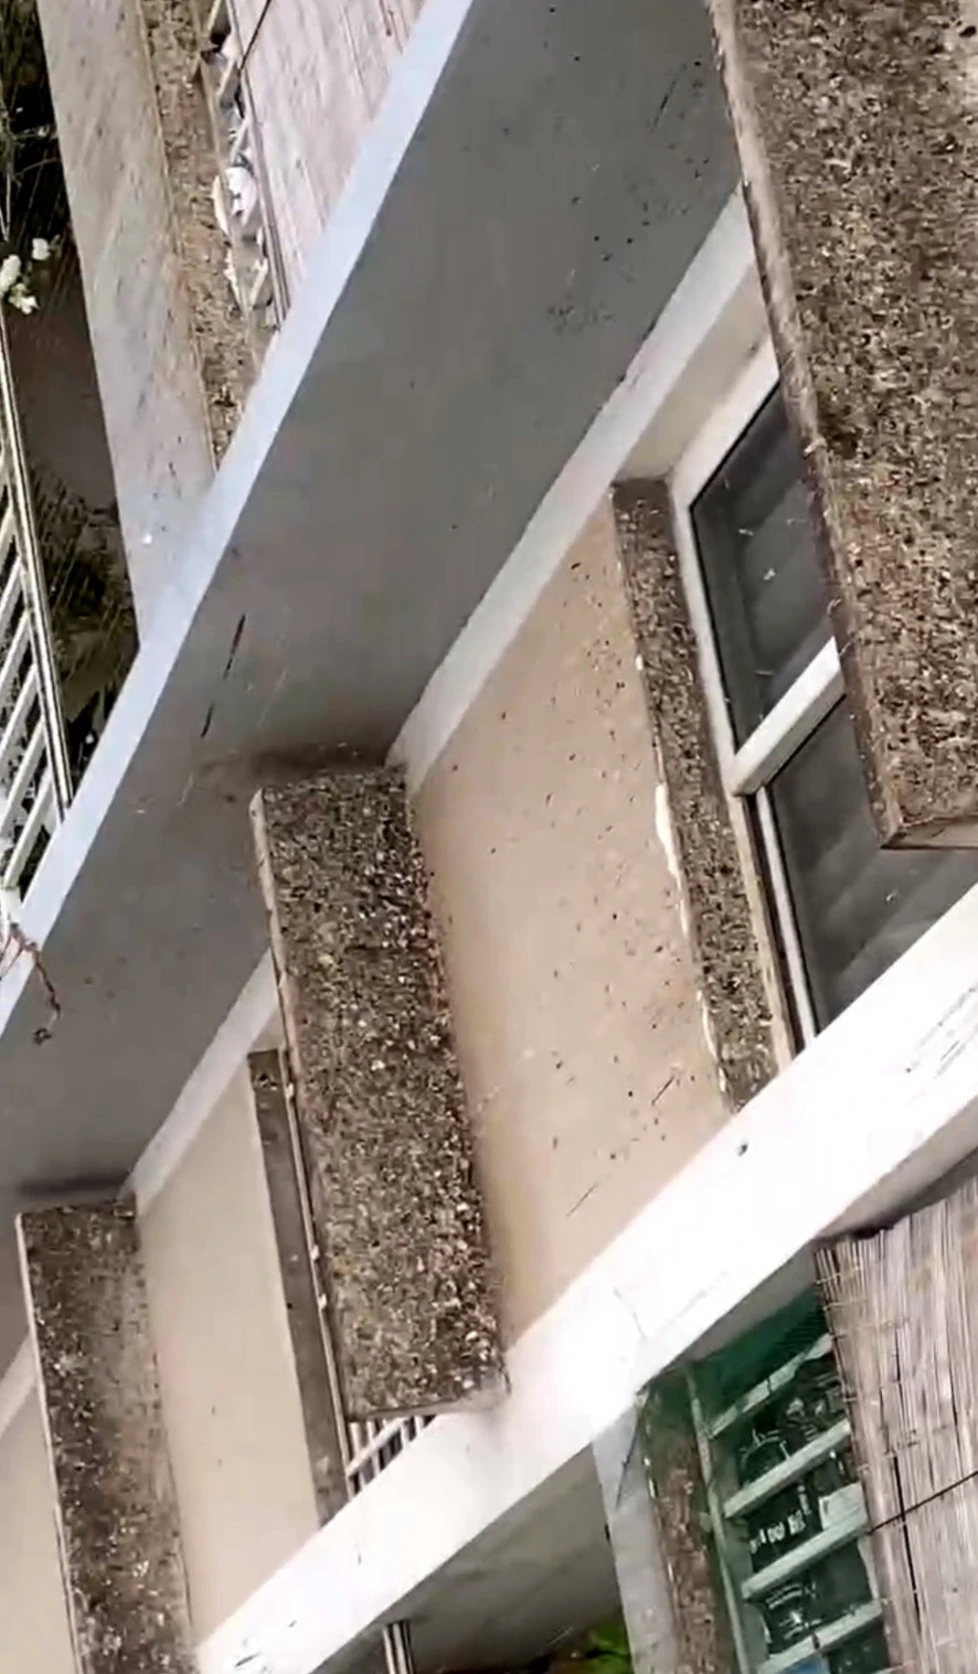 Họp khẩn giải quyết vụ đàn chim bồ câu gây ô nhiễm tại chung cư ở TP.Thủ Đức